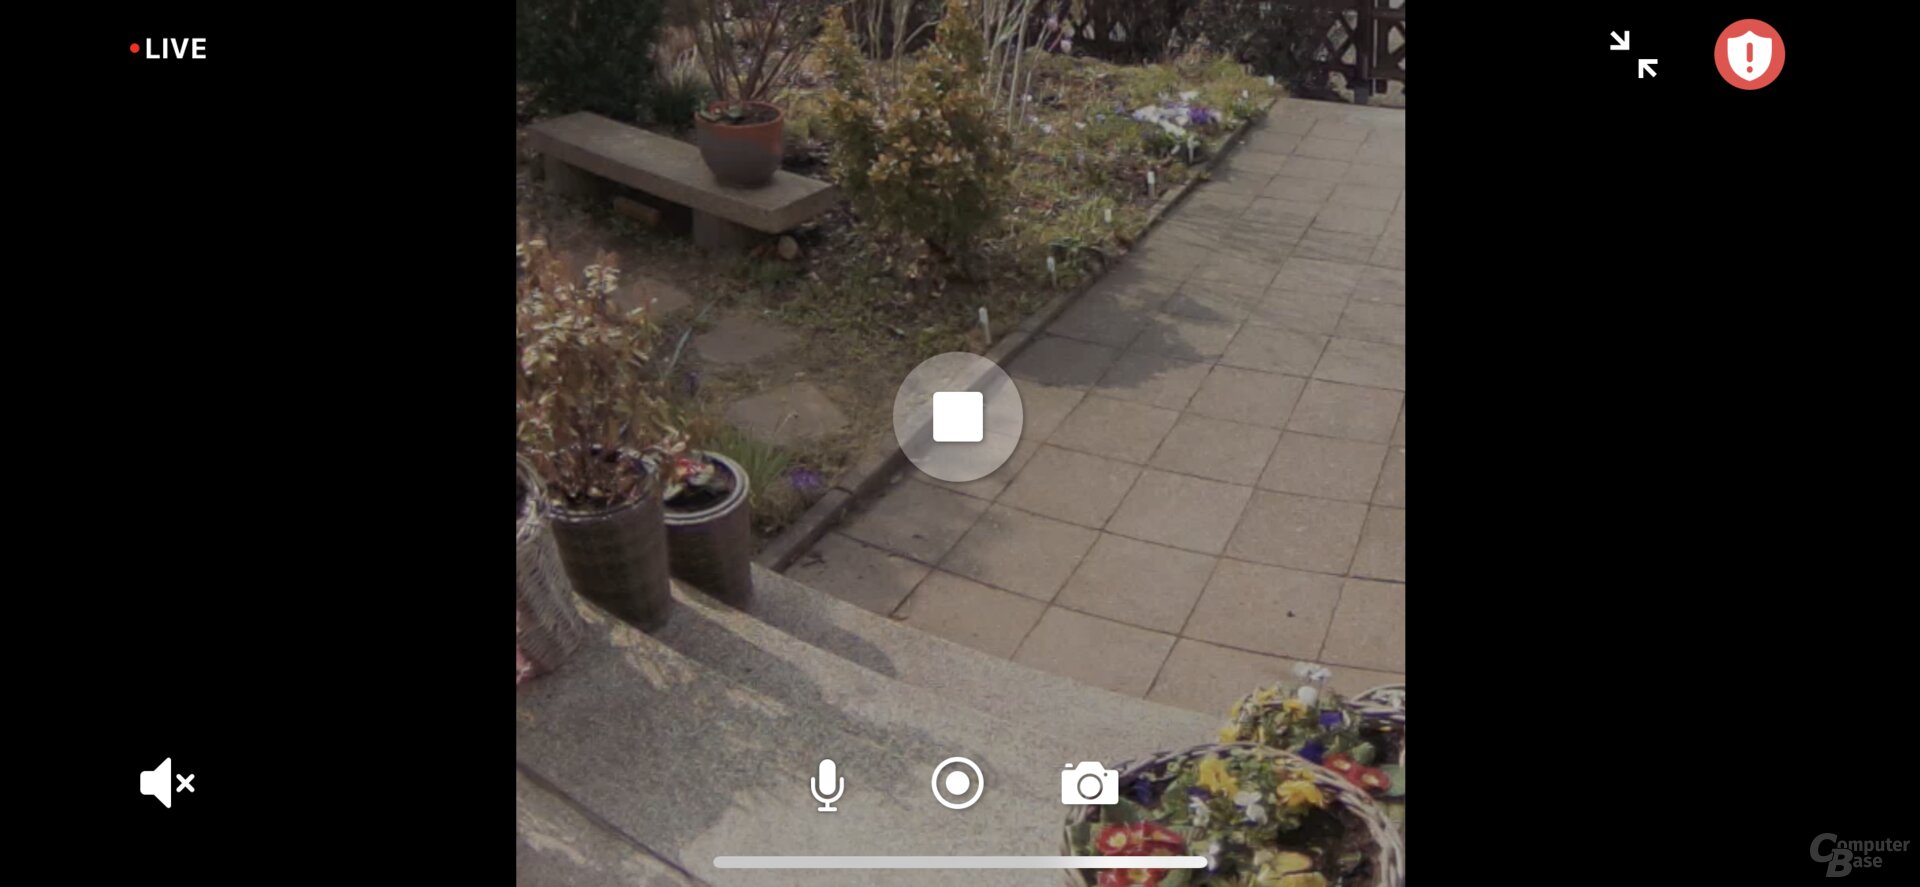 Festgelegter Bildausschnitt wird auch im Livebild der Arlo Video Doorbell umgesetzt